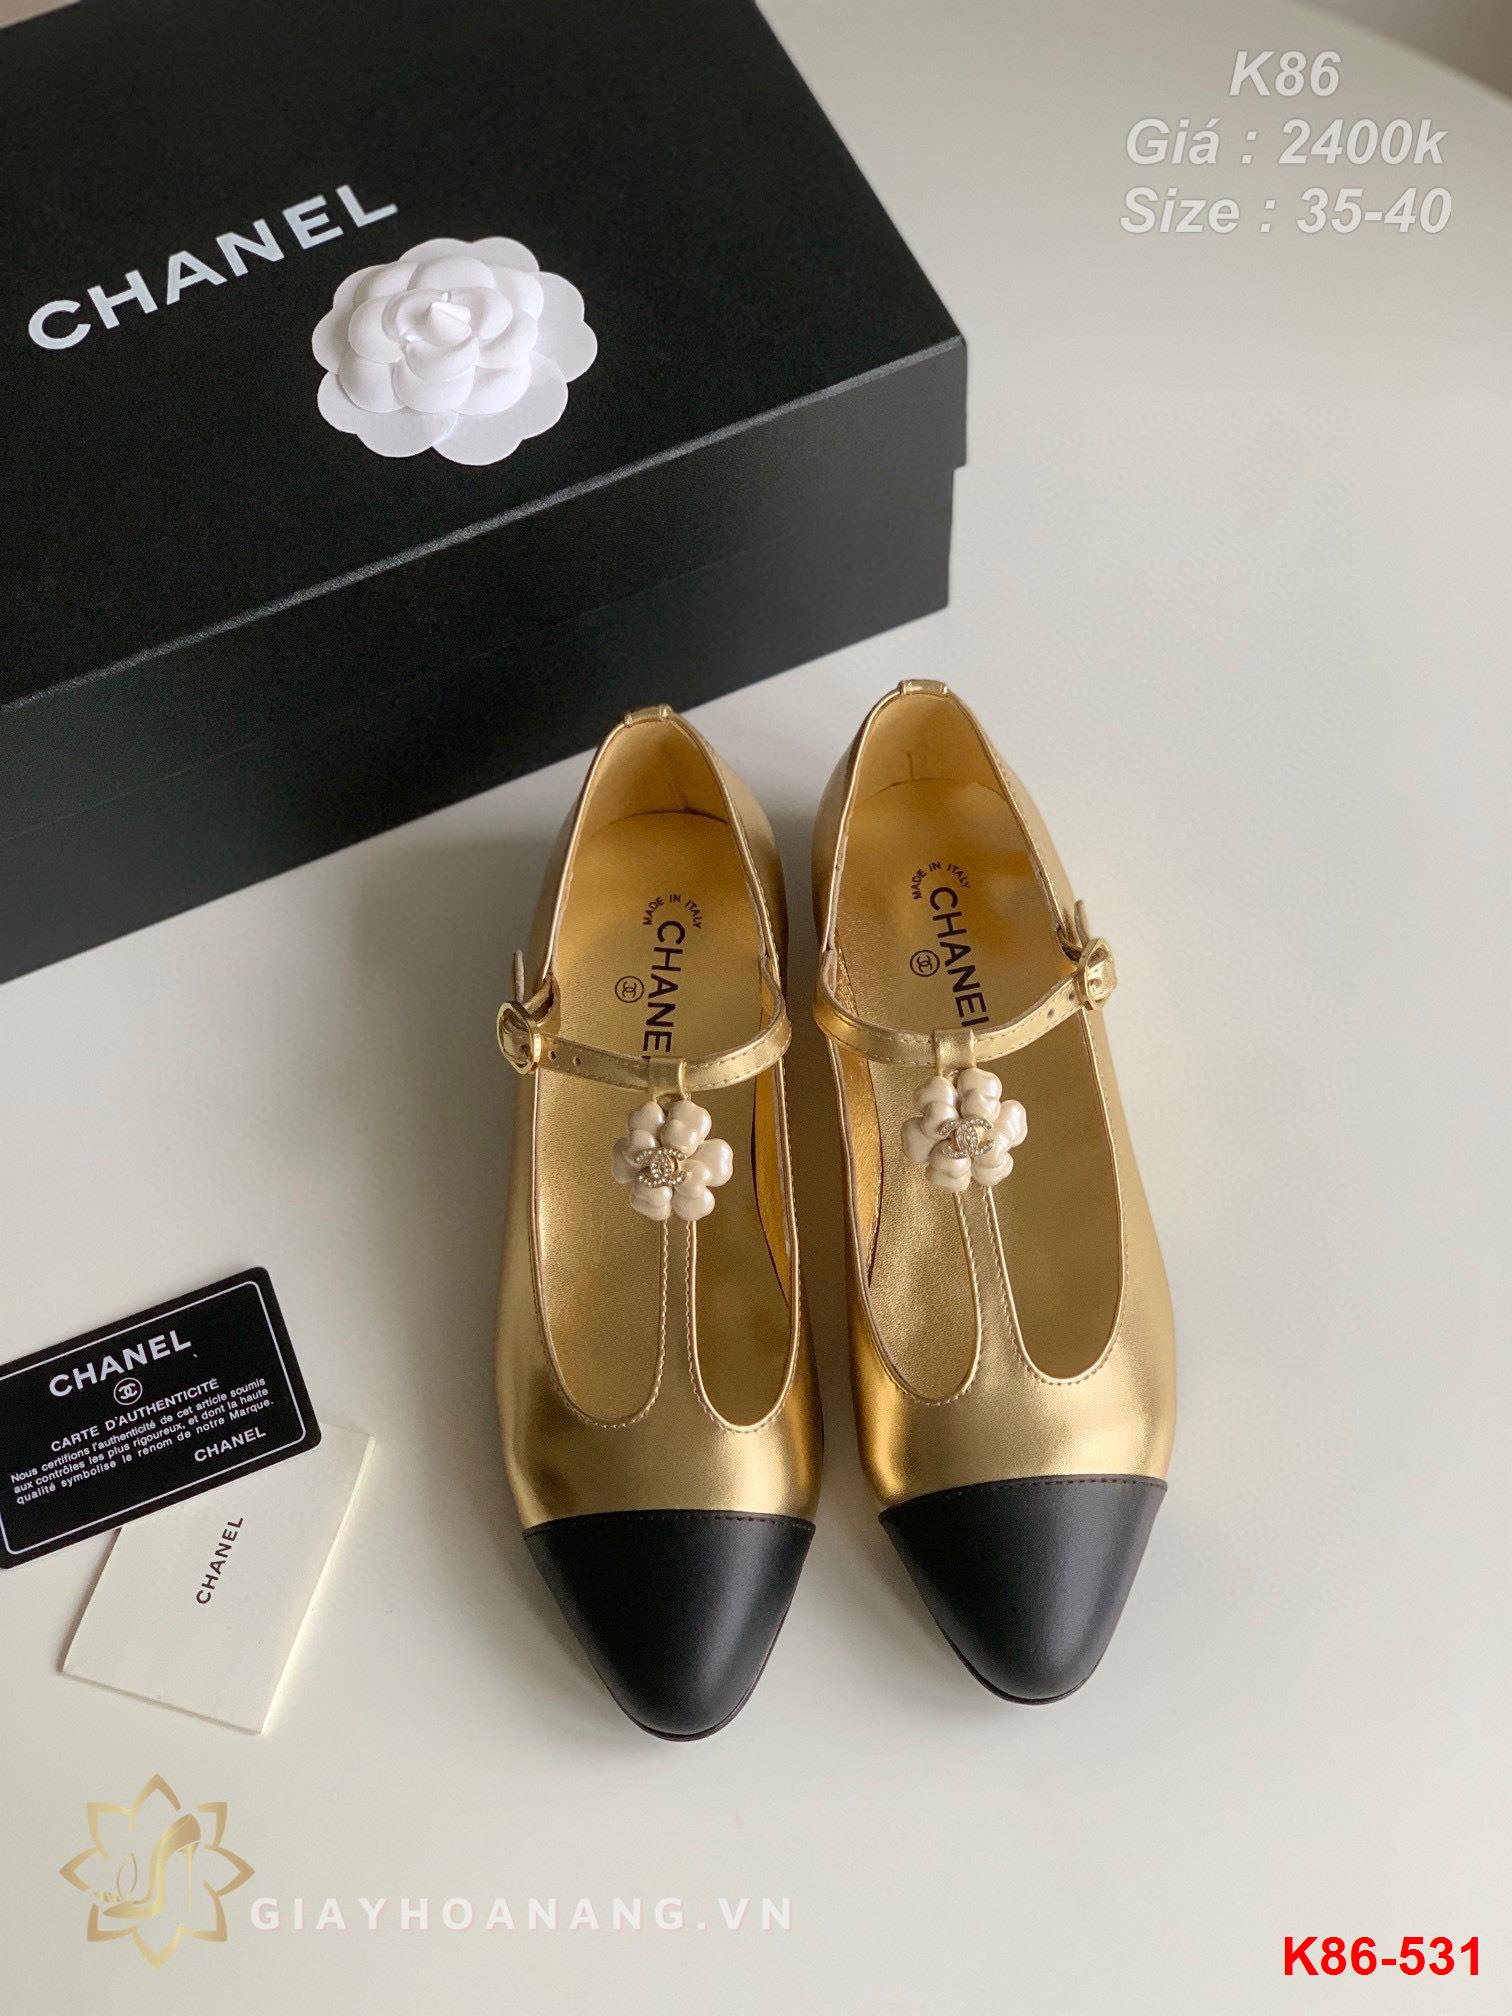 K86-531 Chanel giày bệt siêu cấp